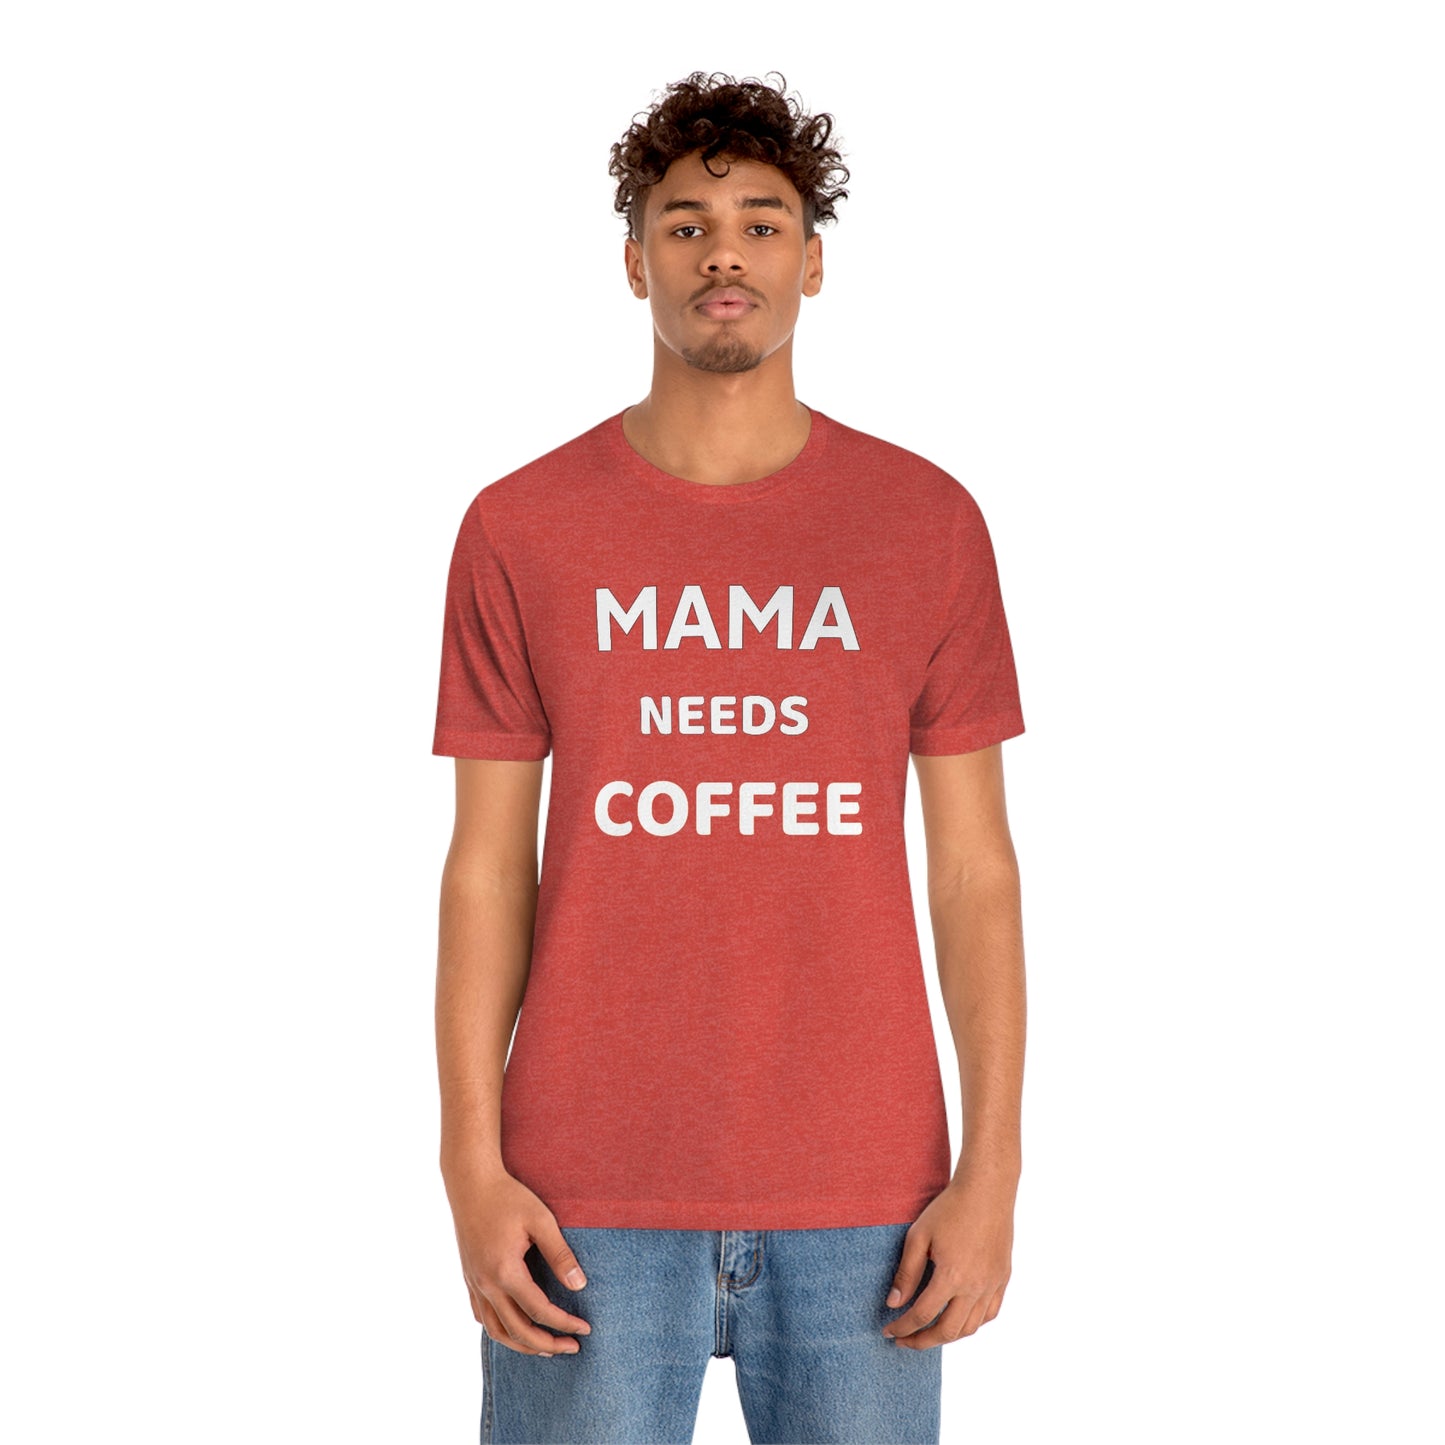 Mama Needs Coffee shirt - Coffee lovers shirt - funny coffee shirt